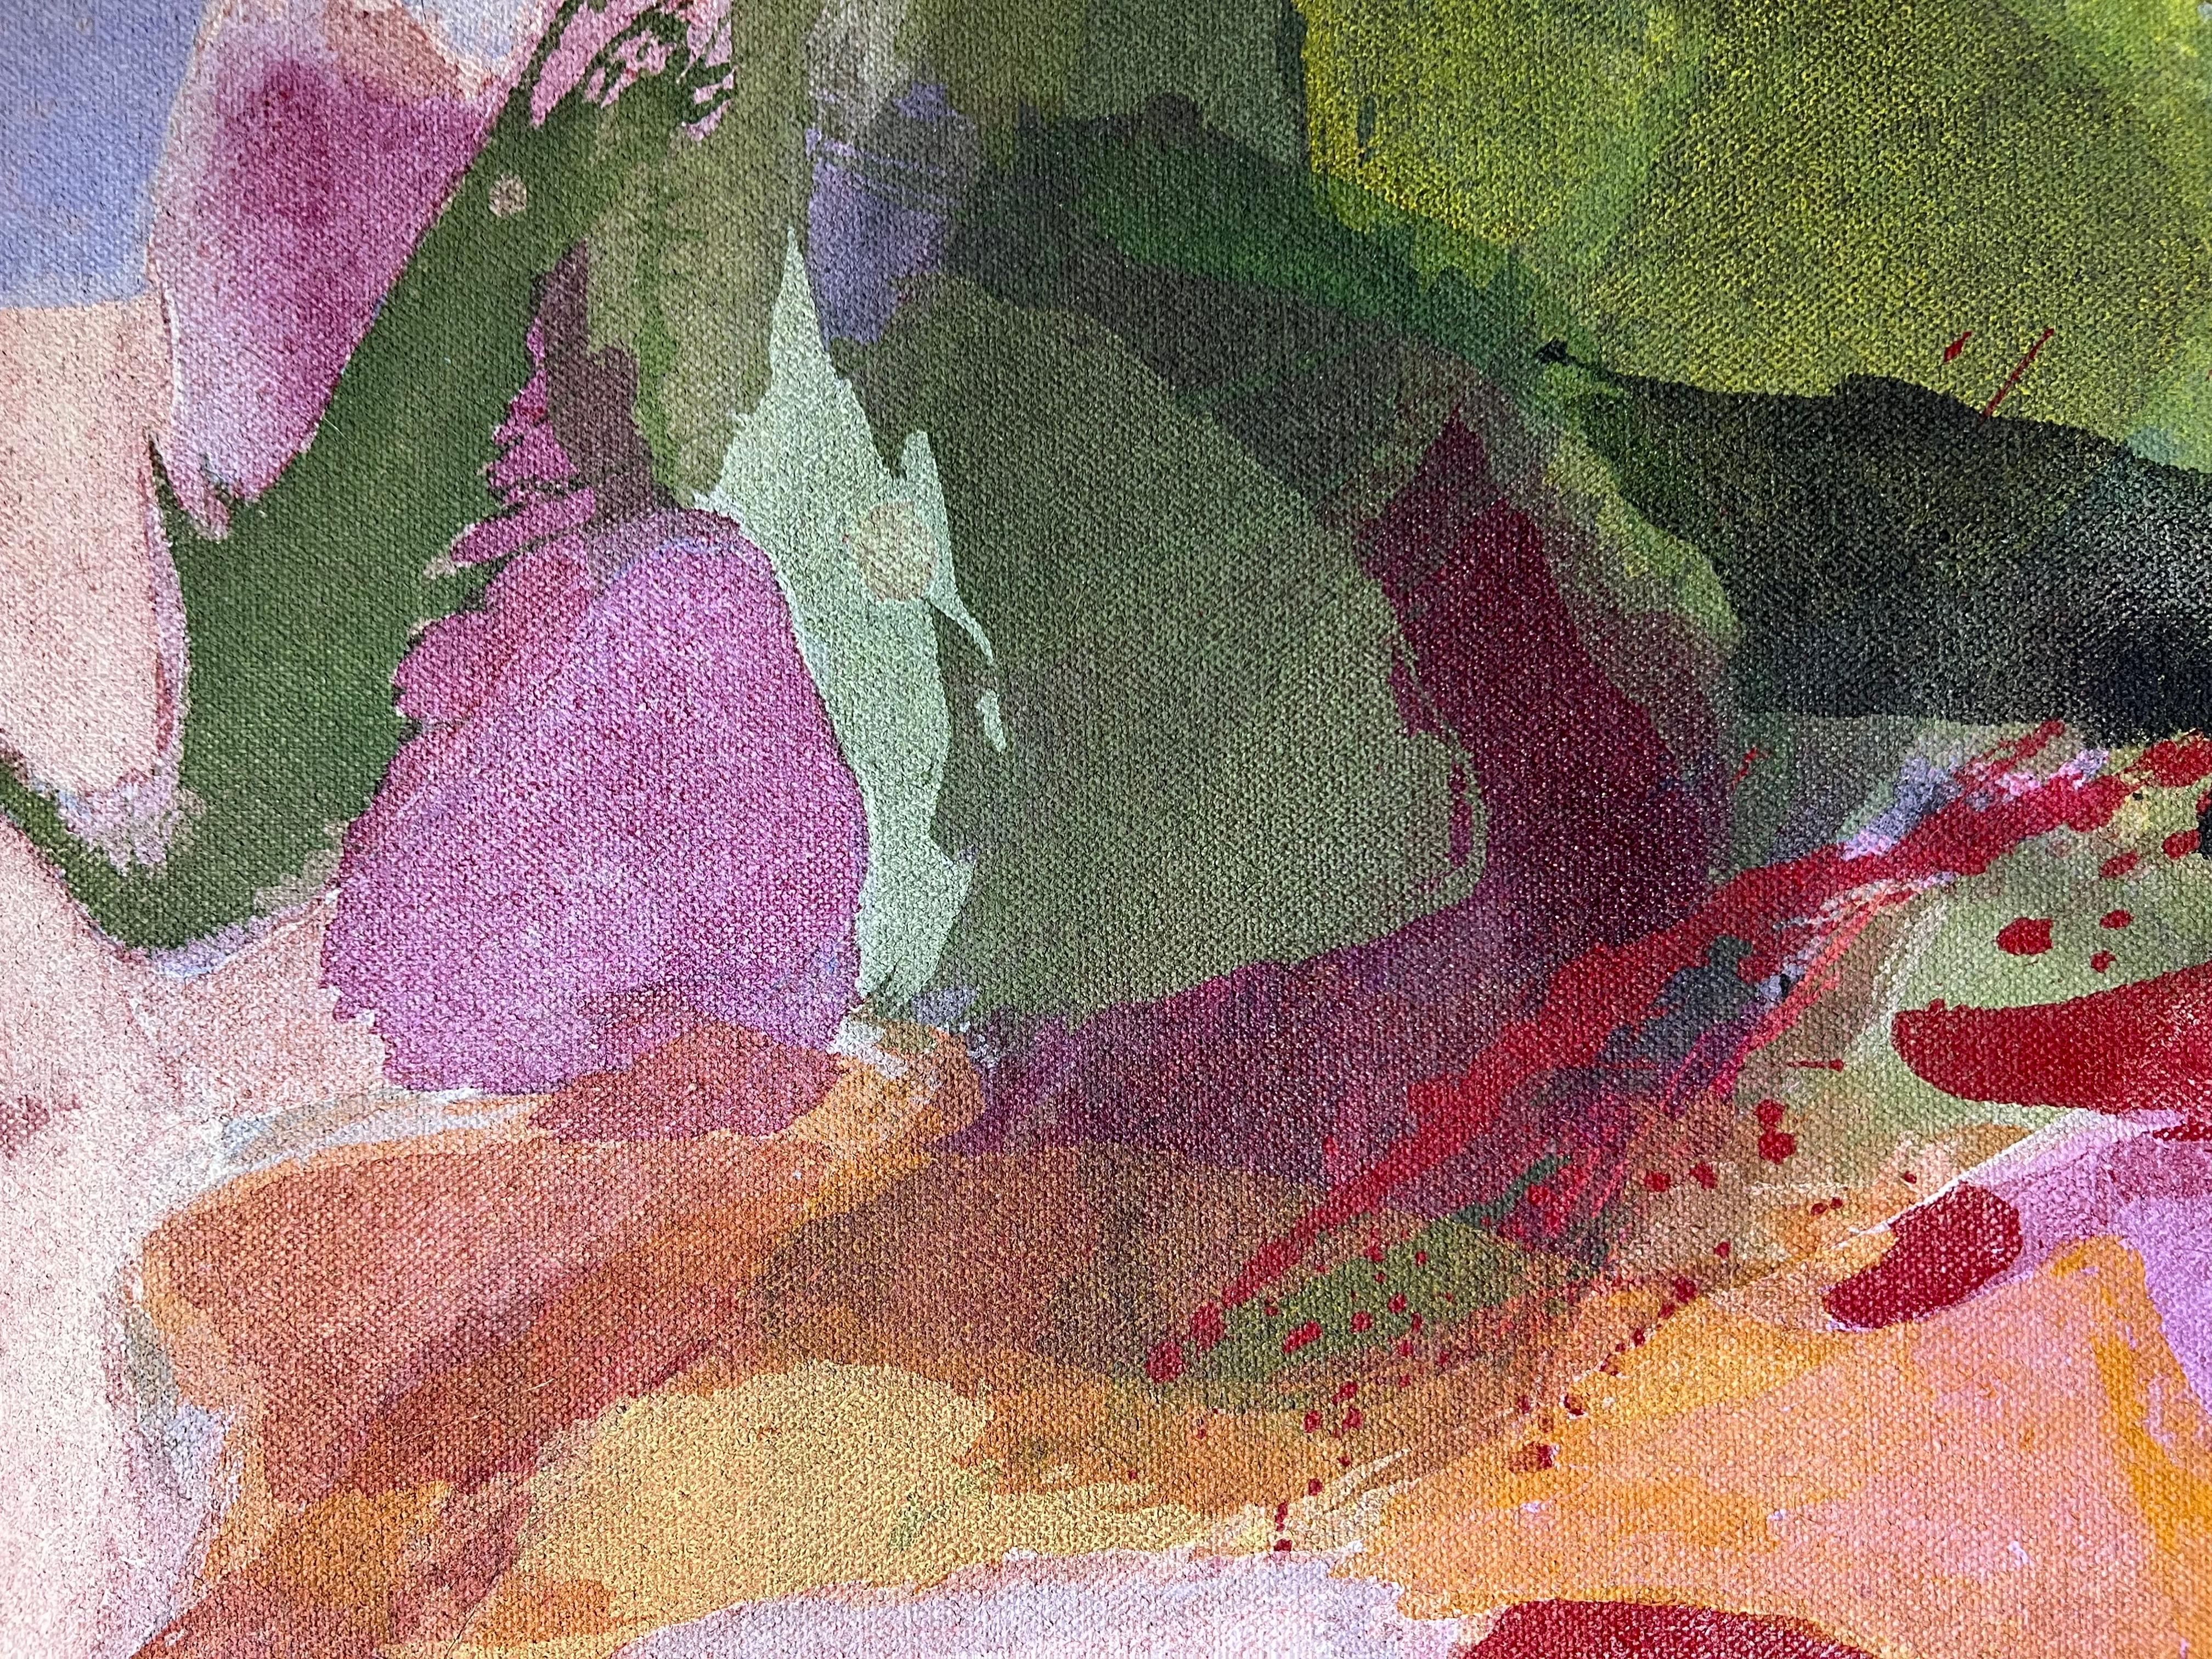 Nous avons ici deux magnifiques peintures colorées de Tsugio Hattori (1952-1958), que nous vendons séparément.  

Tsugio Hattori est un peintre abstrait américain/japonais qui a exposé dans de nombreuses expositions importantes, dans des musées et